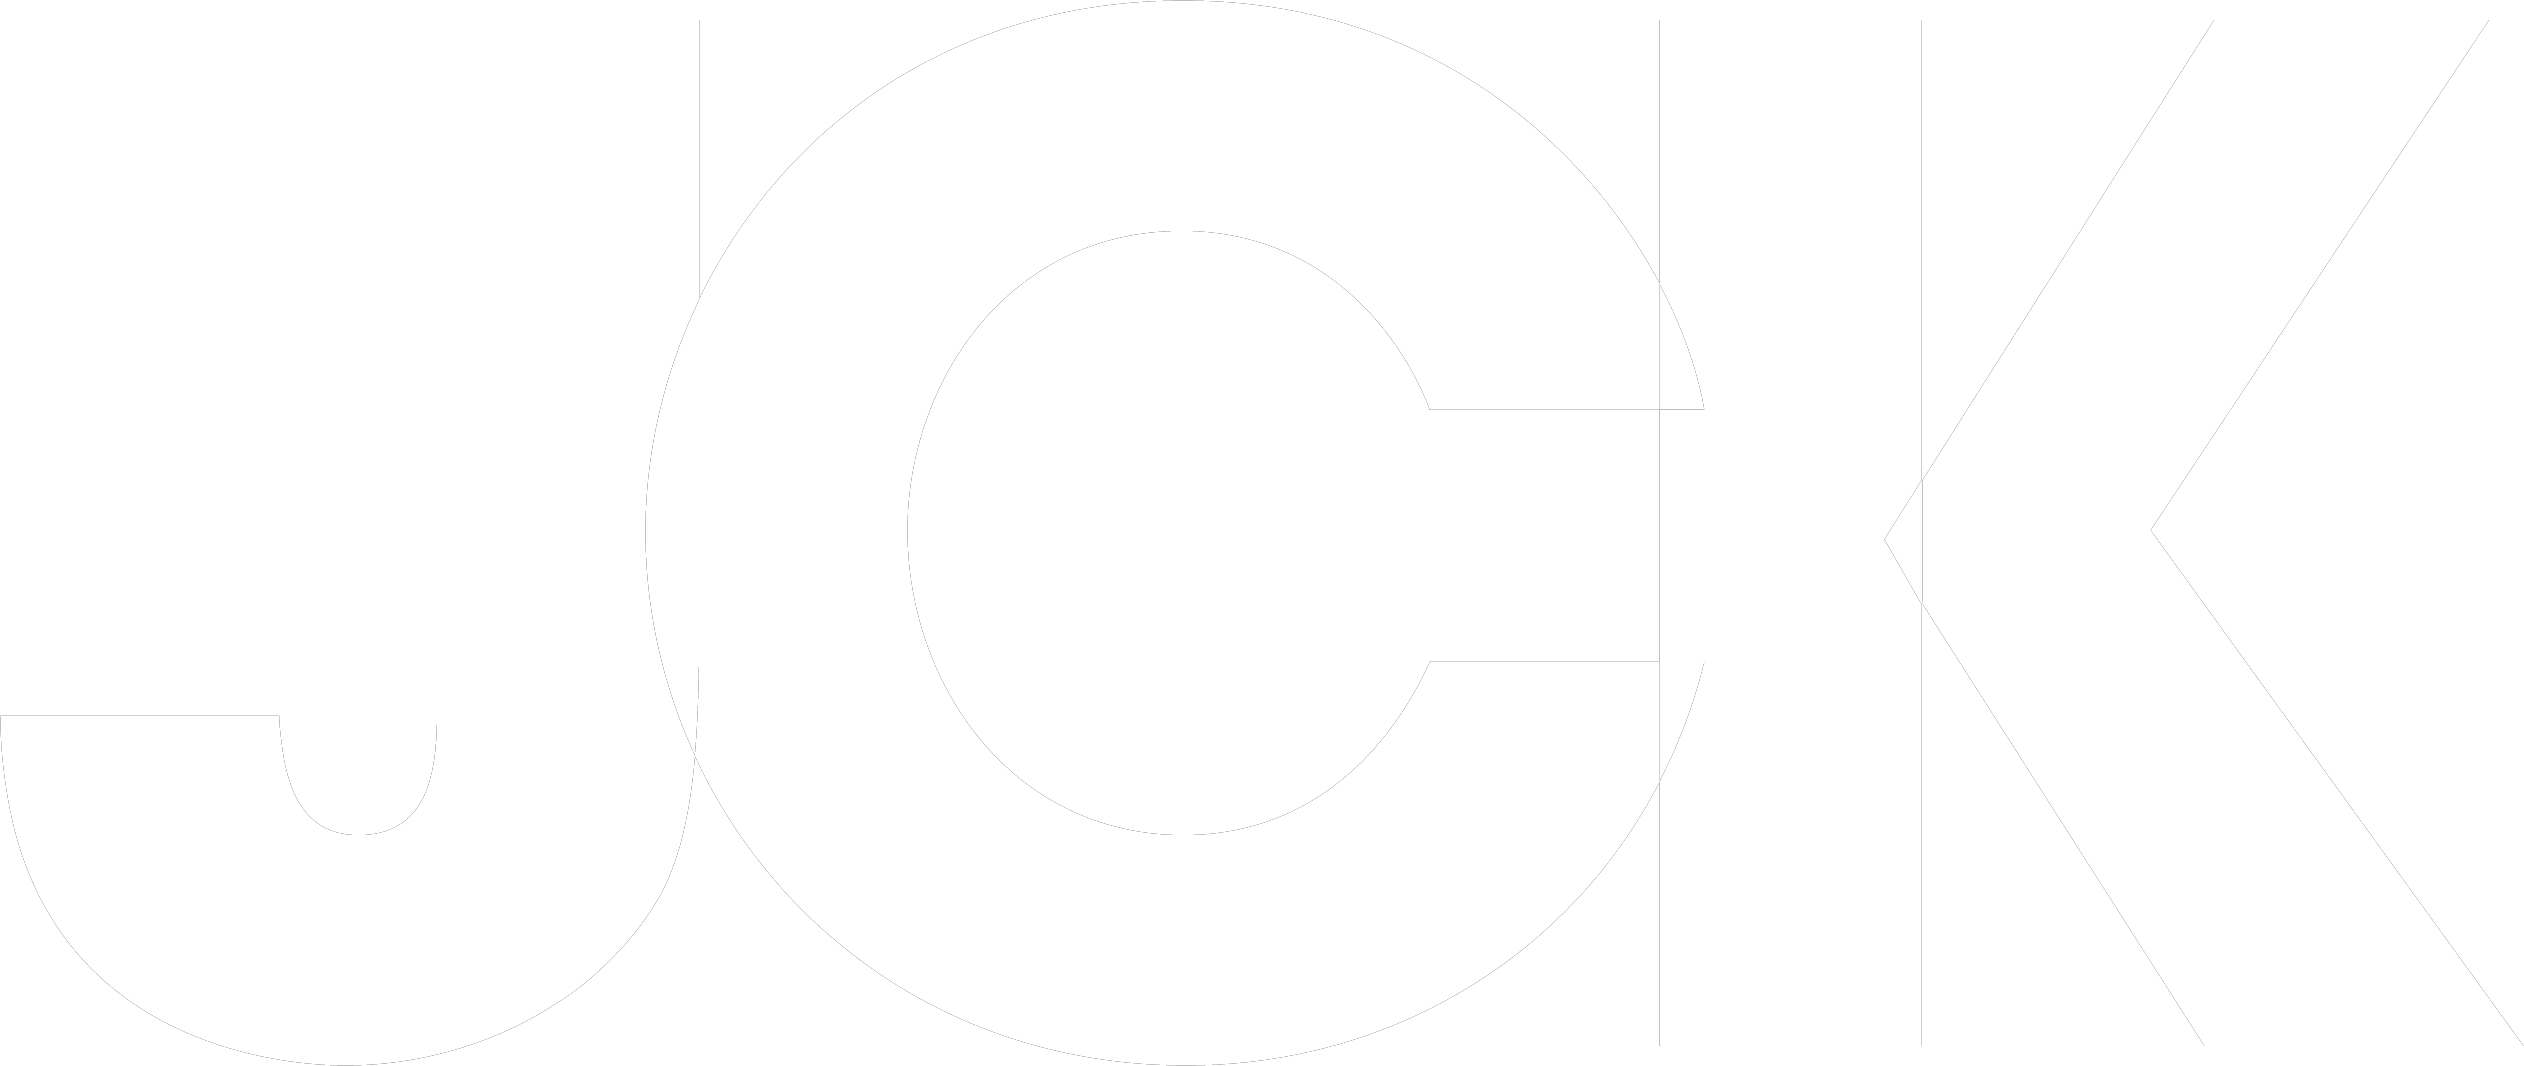 JCK Logo